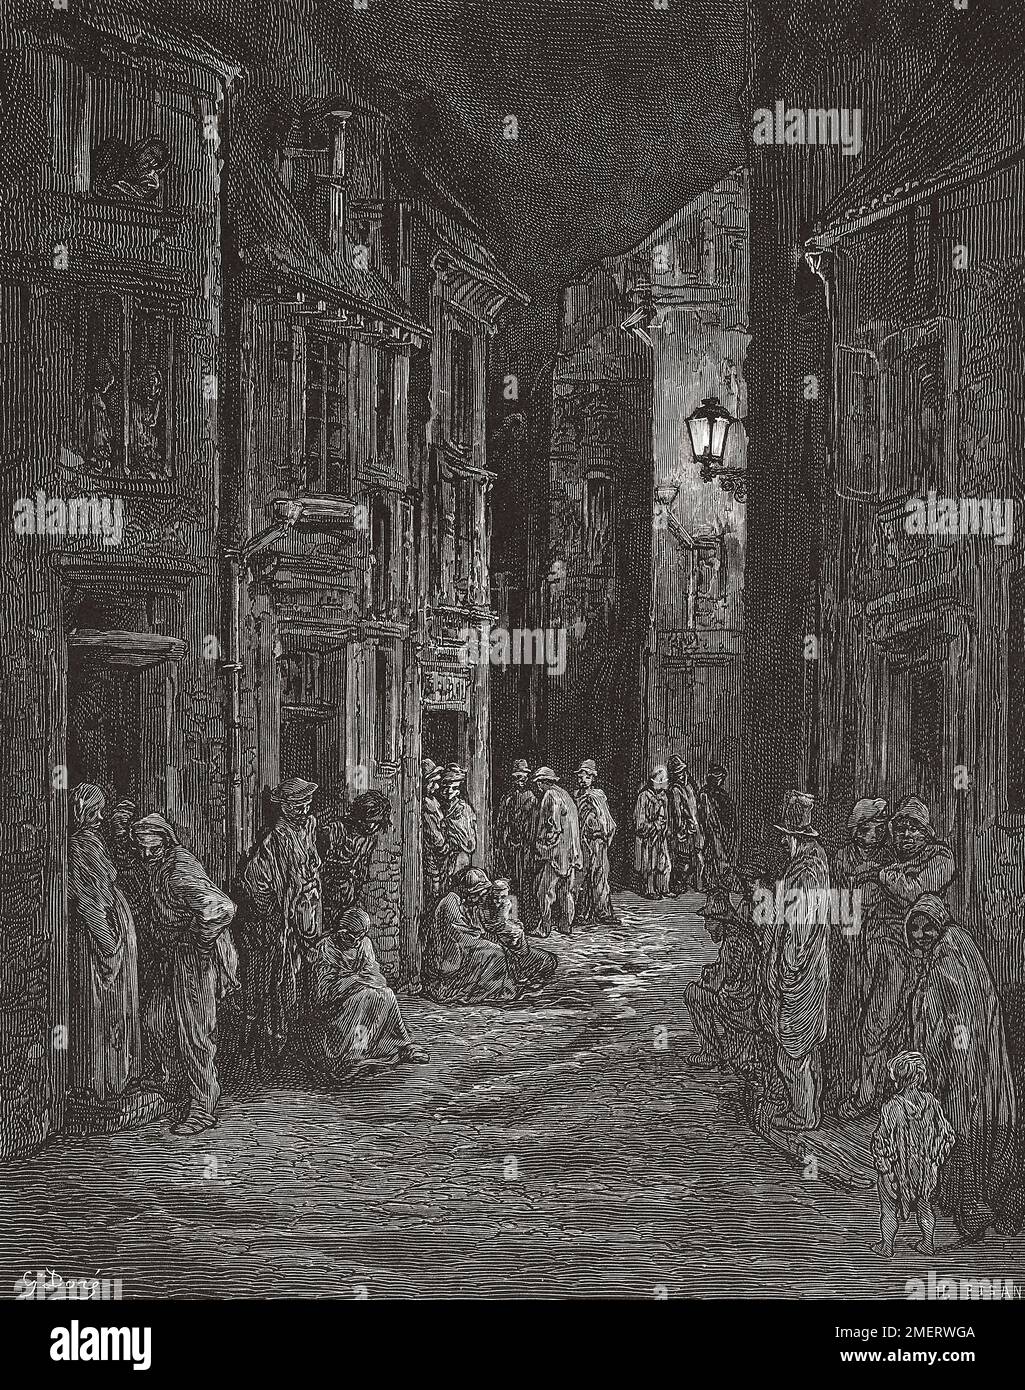 Bluegate Fields, Shadwell, una delle peggiori baraccopoli di Londra nel 19th ° secolo. Dopo un'illustrazione di Gustave Doré nell'edizione americana di Londra del 1890: Un pellegrinaggio scritto da Blanchard Jerrold e illustrato da Gustave Doré. Foto Stock